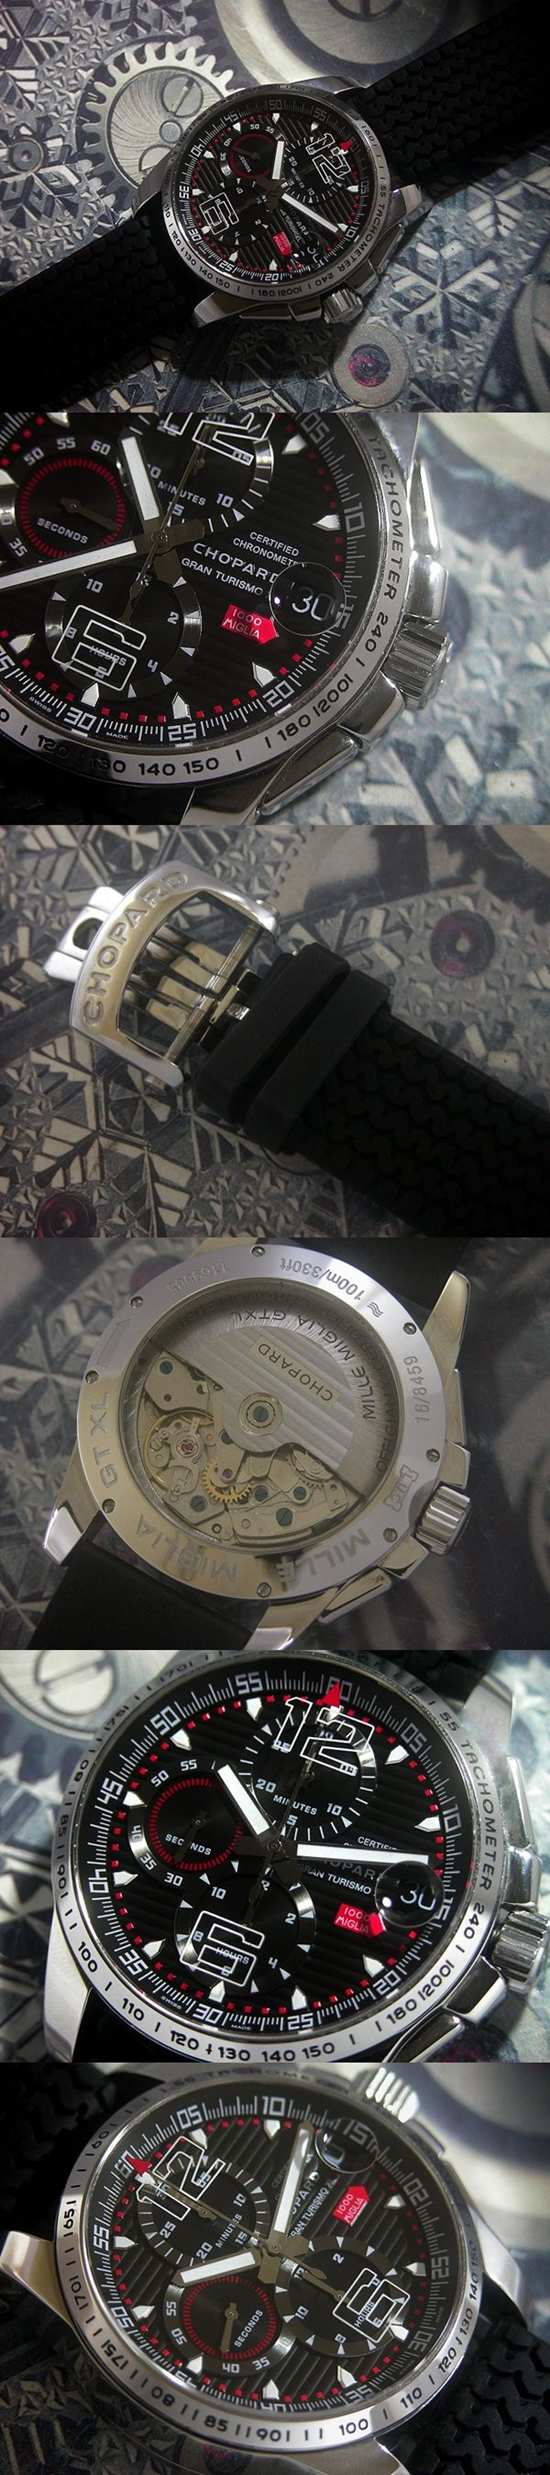 おしゃれなブランド時計がショパール-CHOPARD-ミッレミリア-16-8459-al  男性用腕時計を提供します.